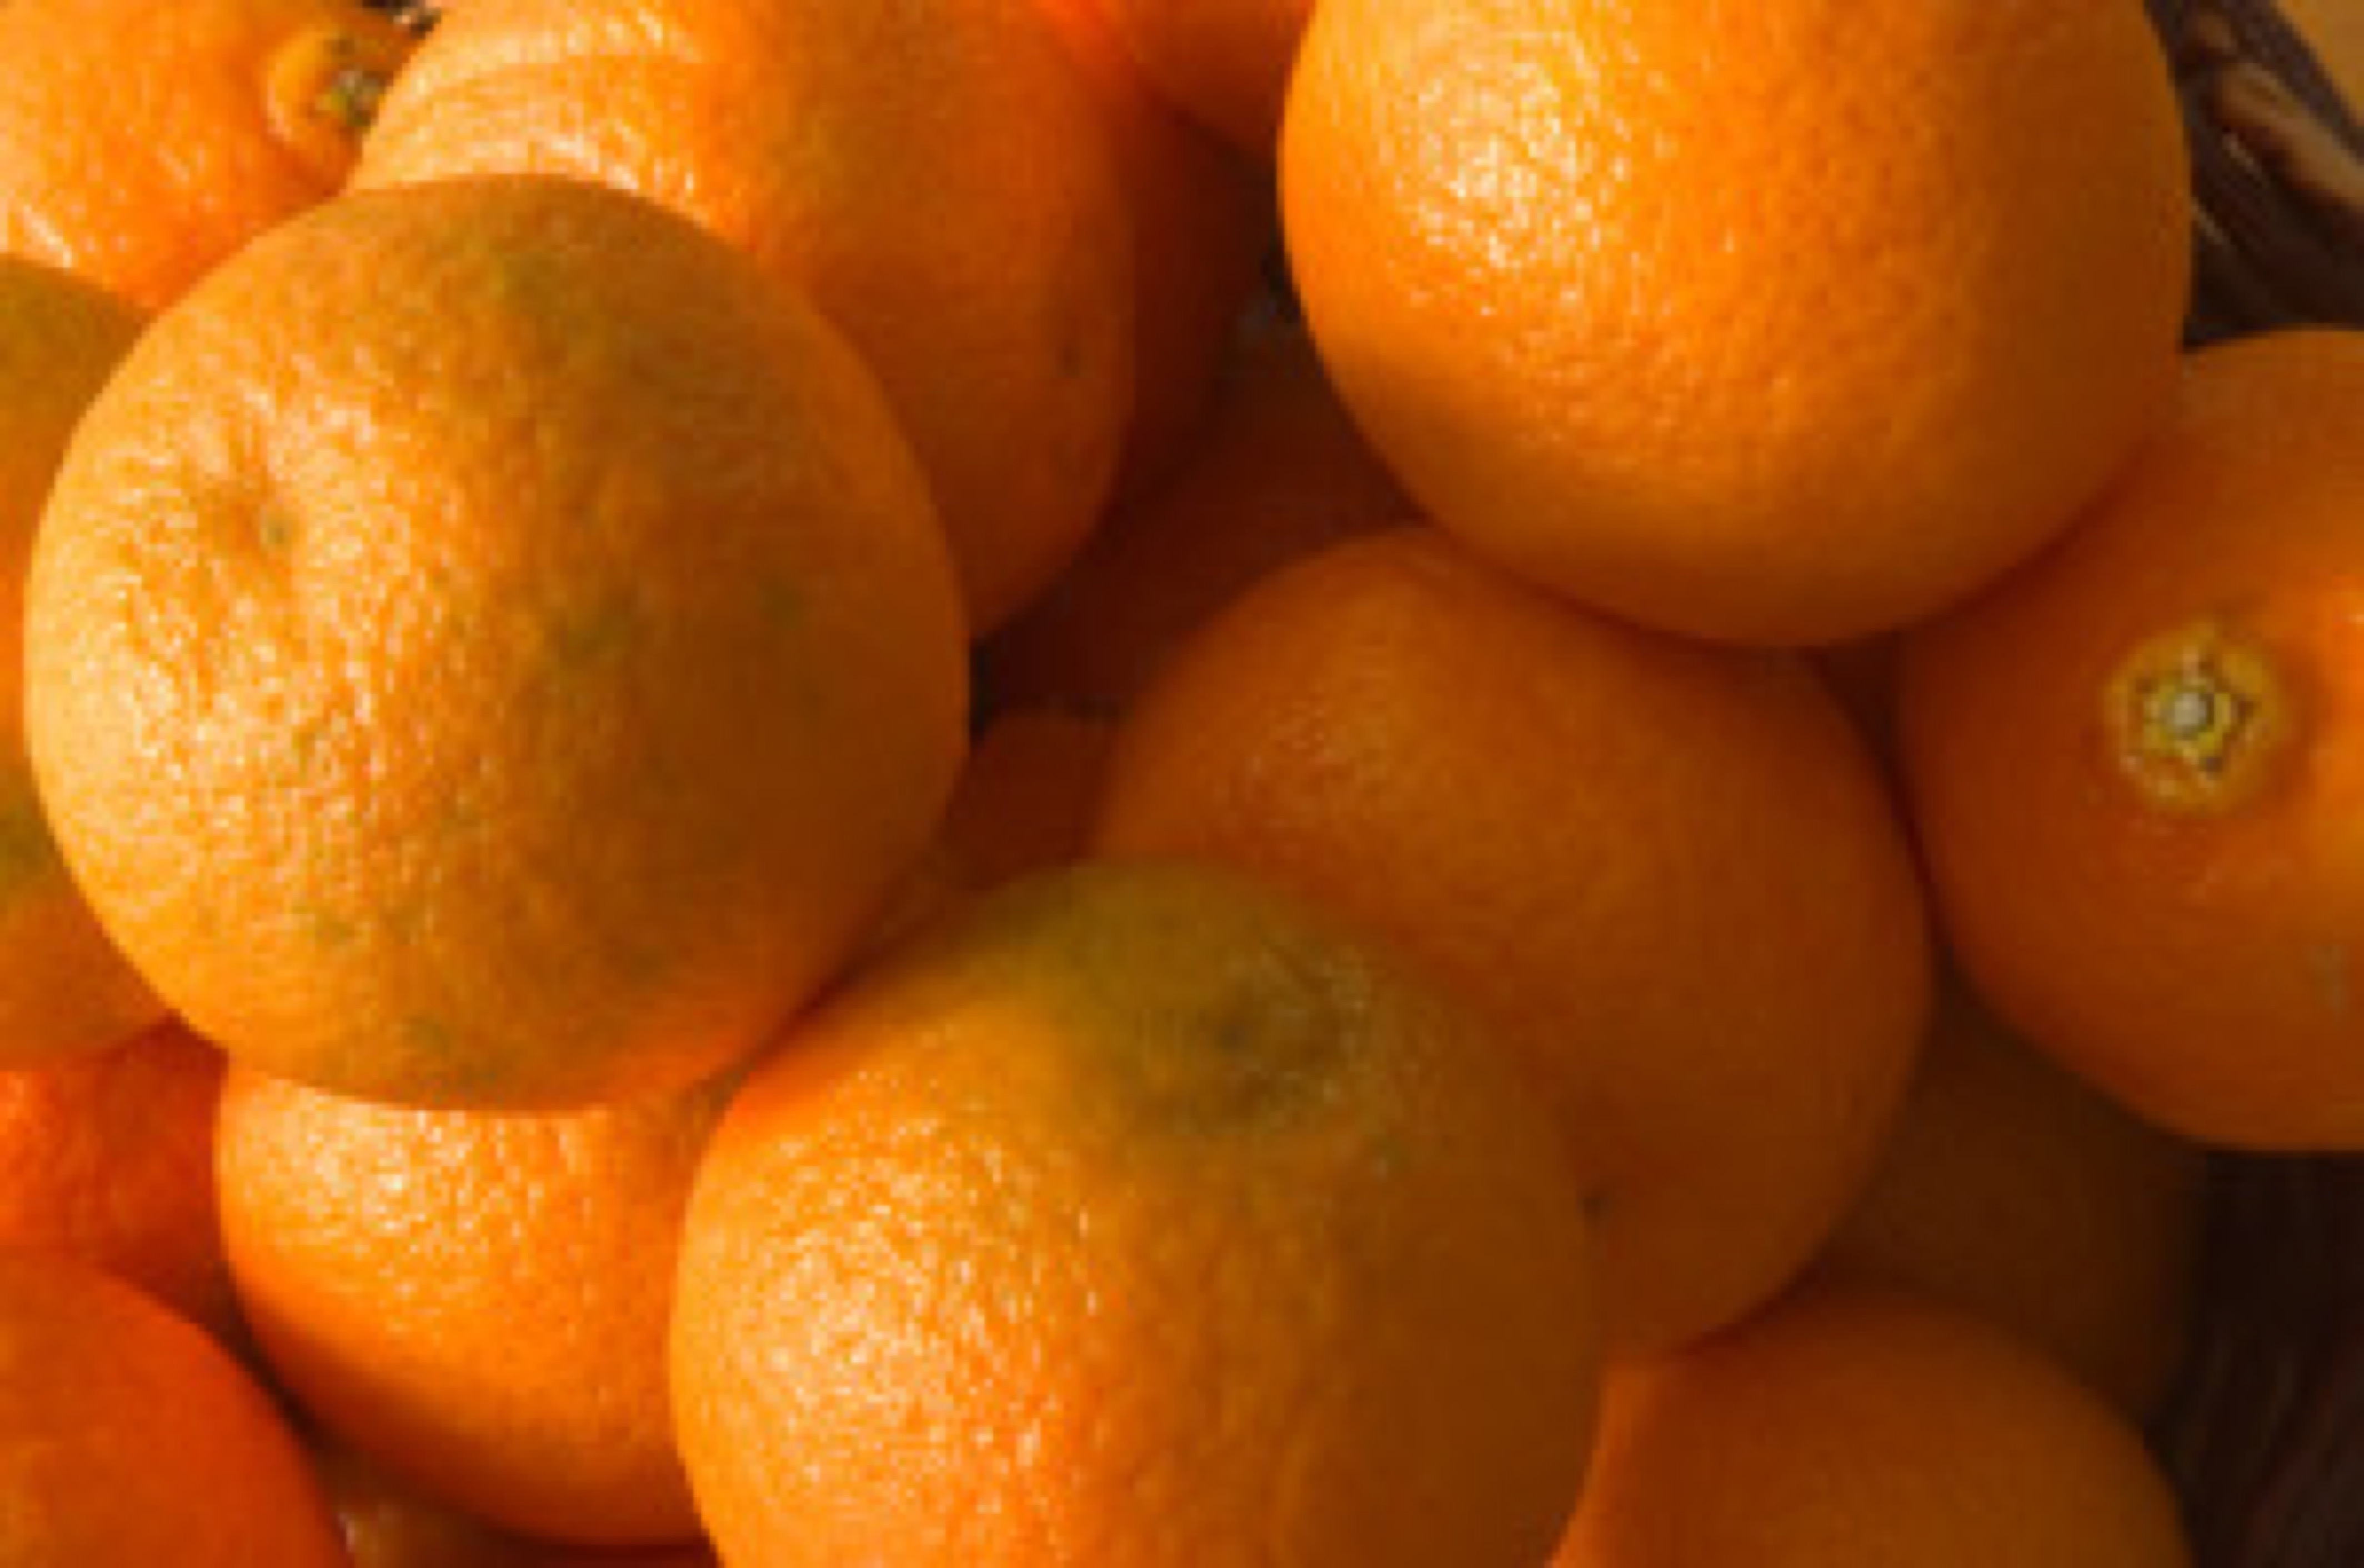 oranges - vitamin C